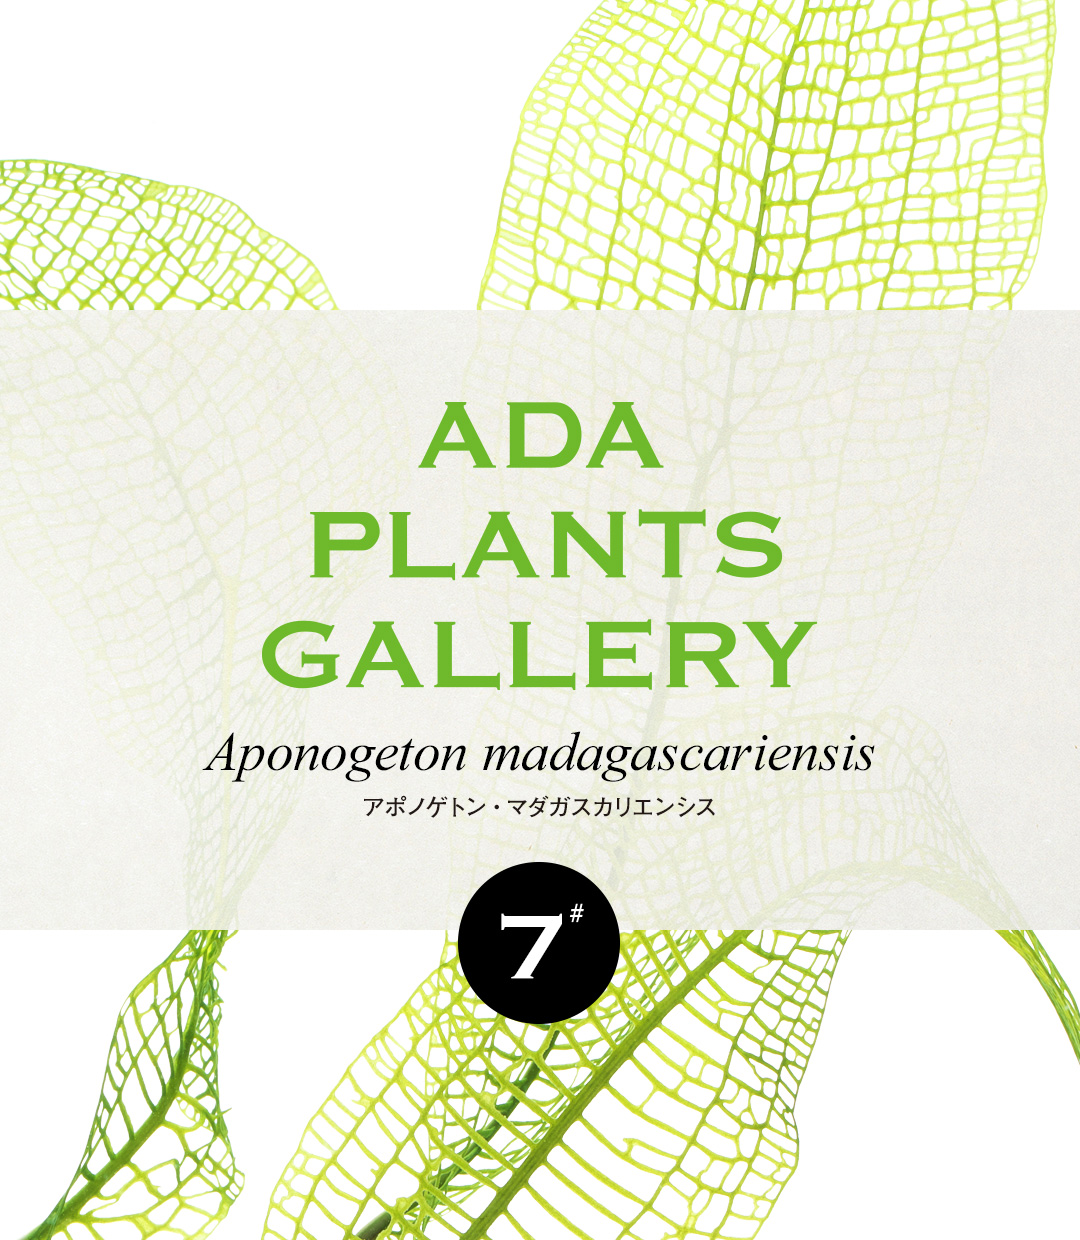 ADA PLANTS GALLERY #07 「アポノゲトン・マダガスカリエンシス」